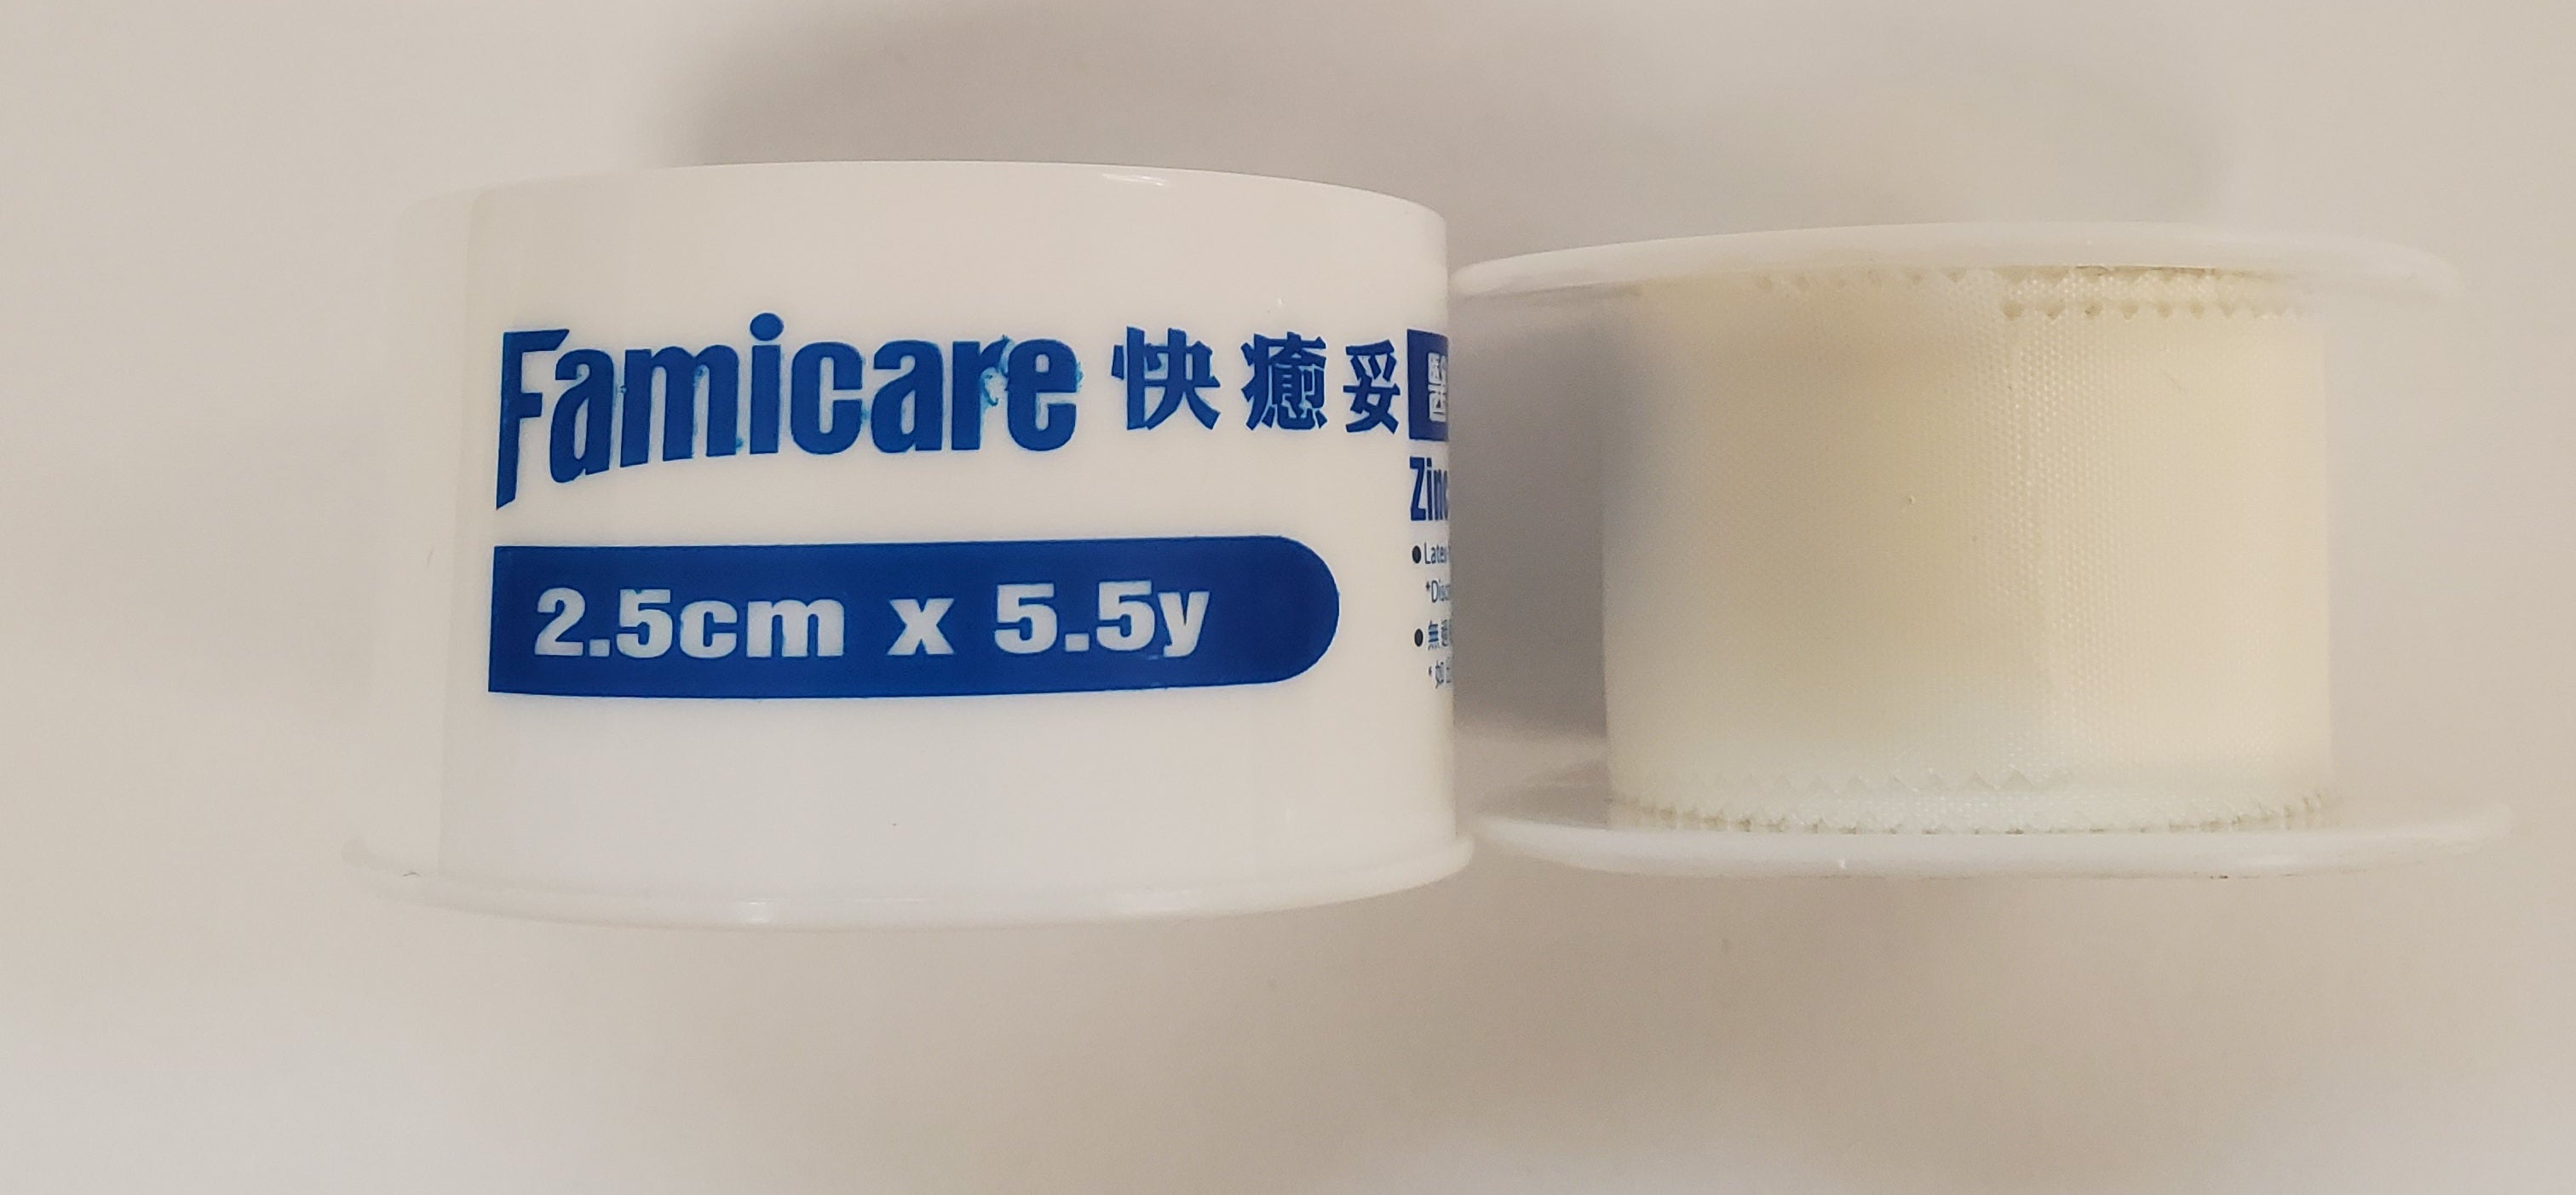 快癒妥醫用氧化鋅膠布(白色)-2.5cm X 5.5y